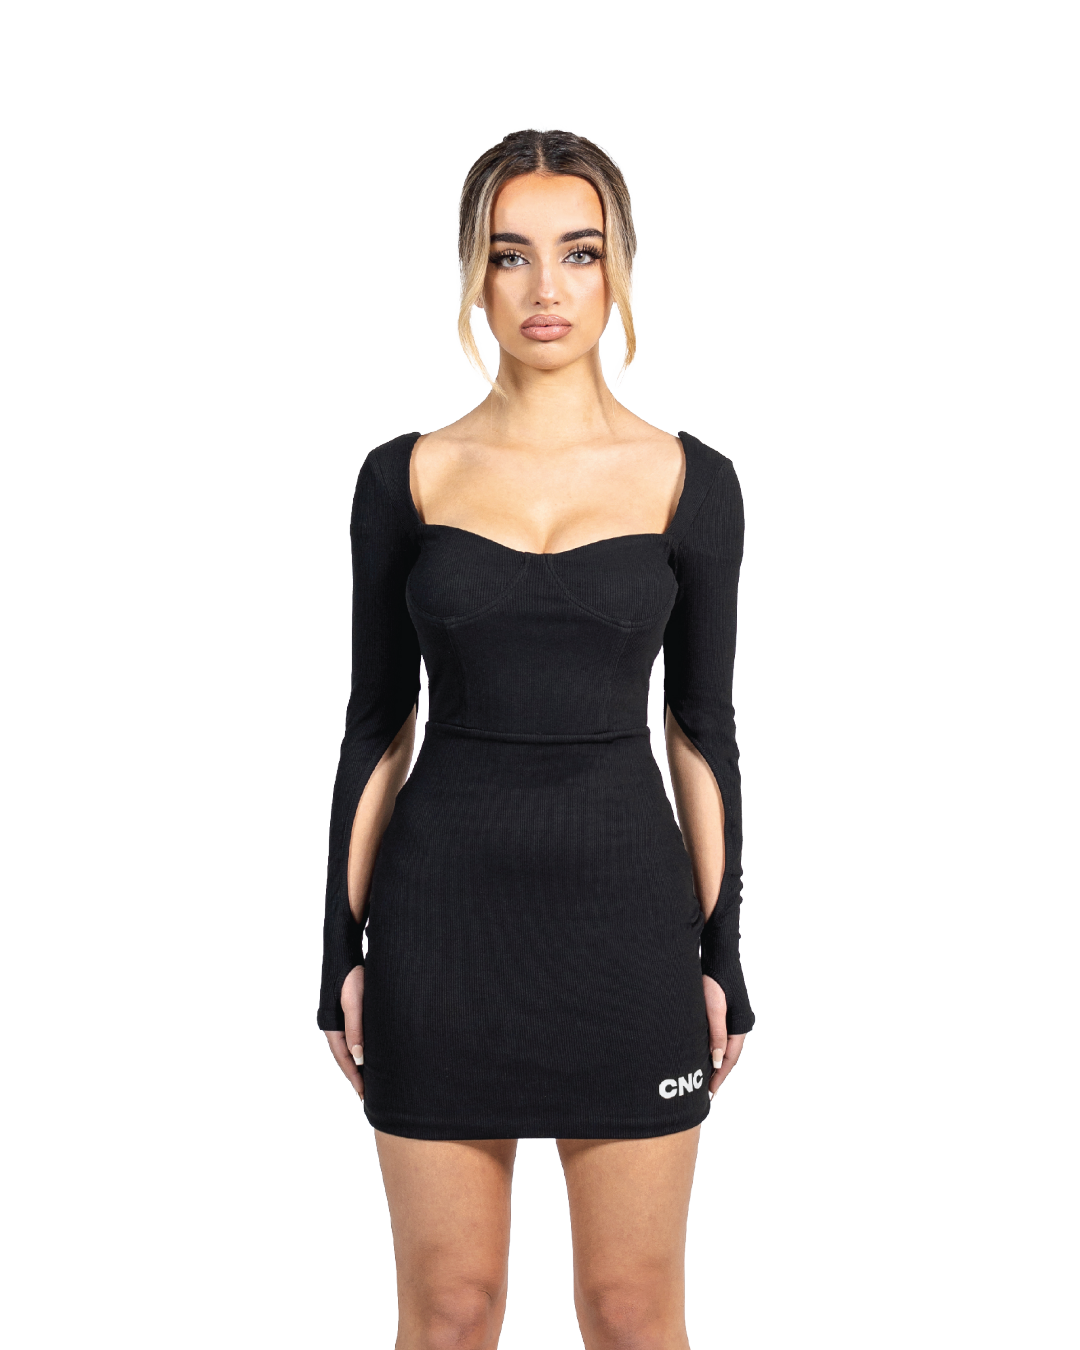 Stella Mini Dress in Jet Black